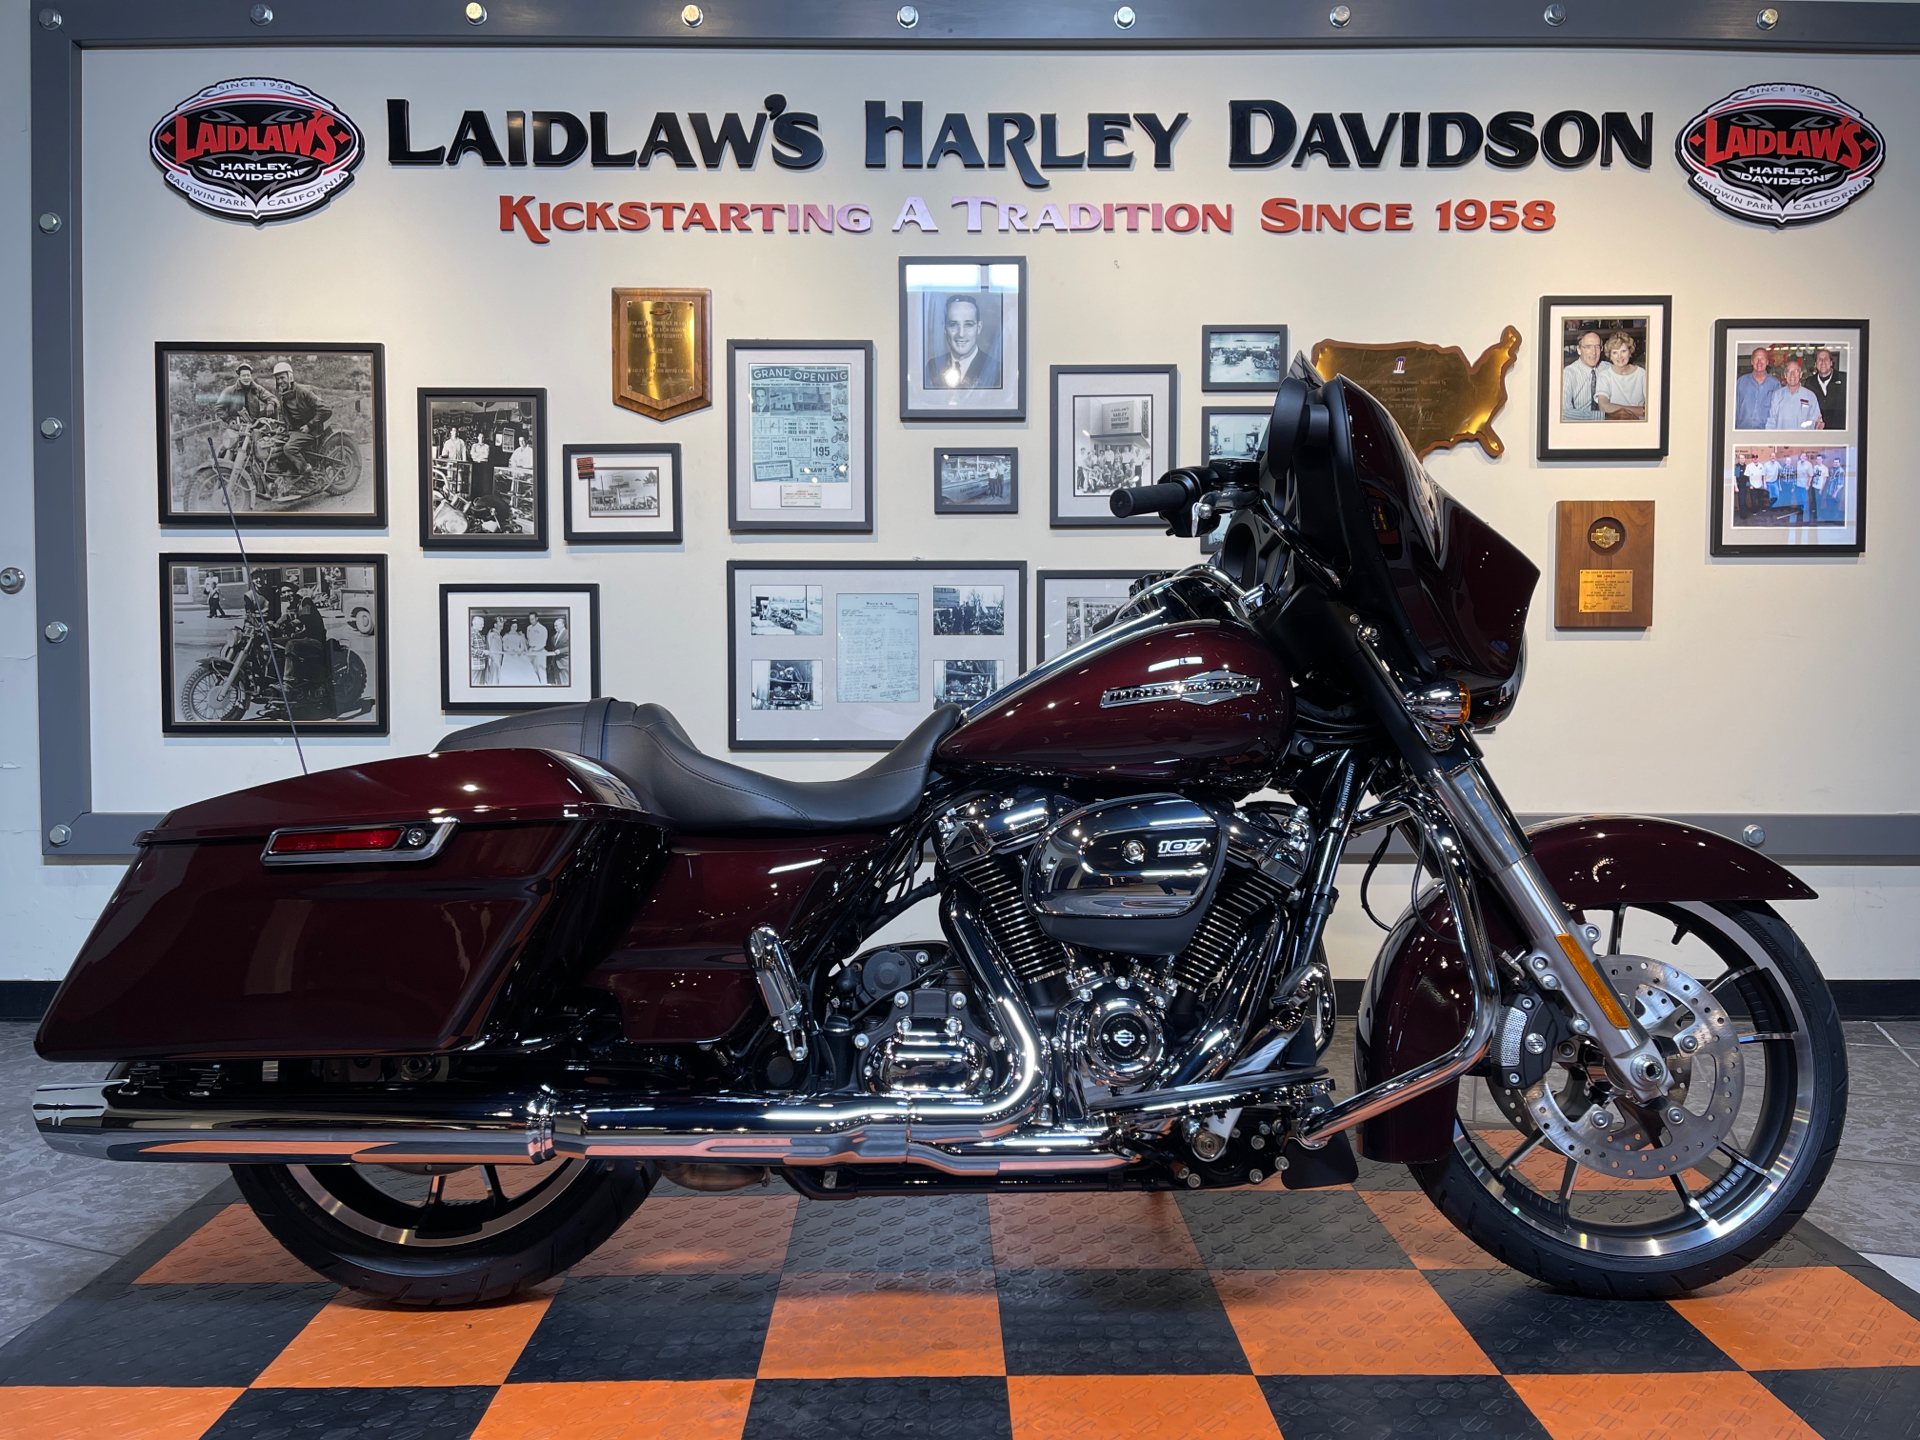 2022 Harley-Davidson Street Glide® in Baldwin Park, California - Photo 1